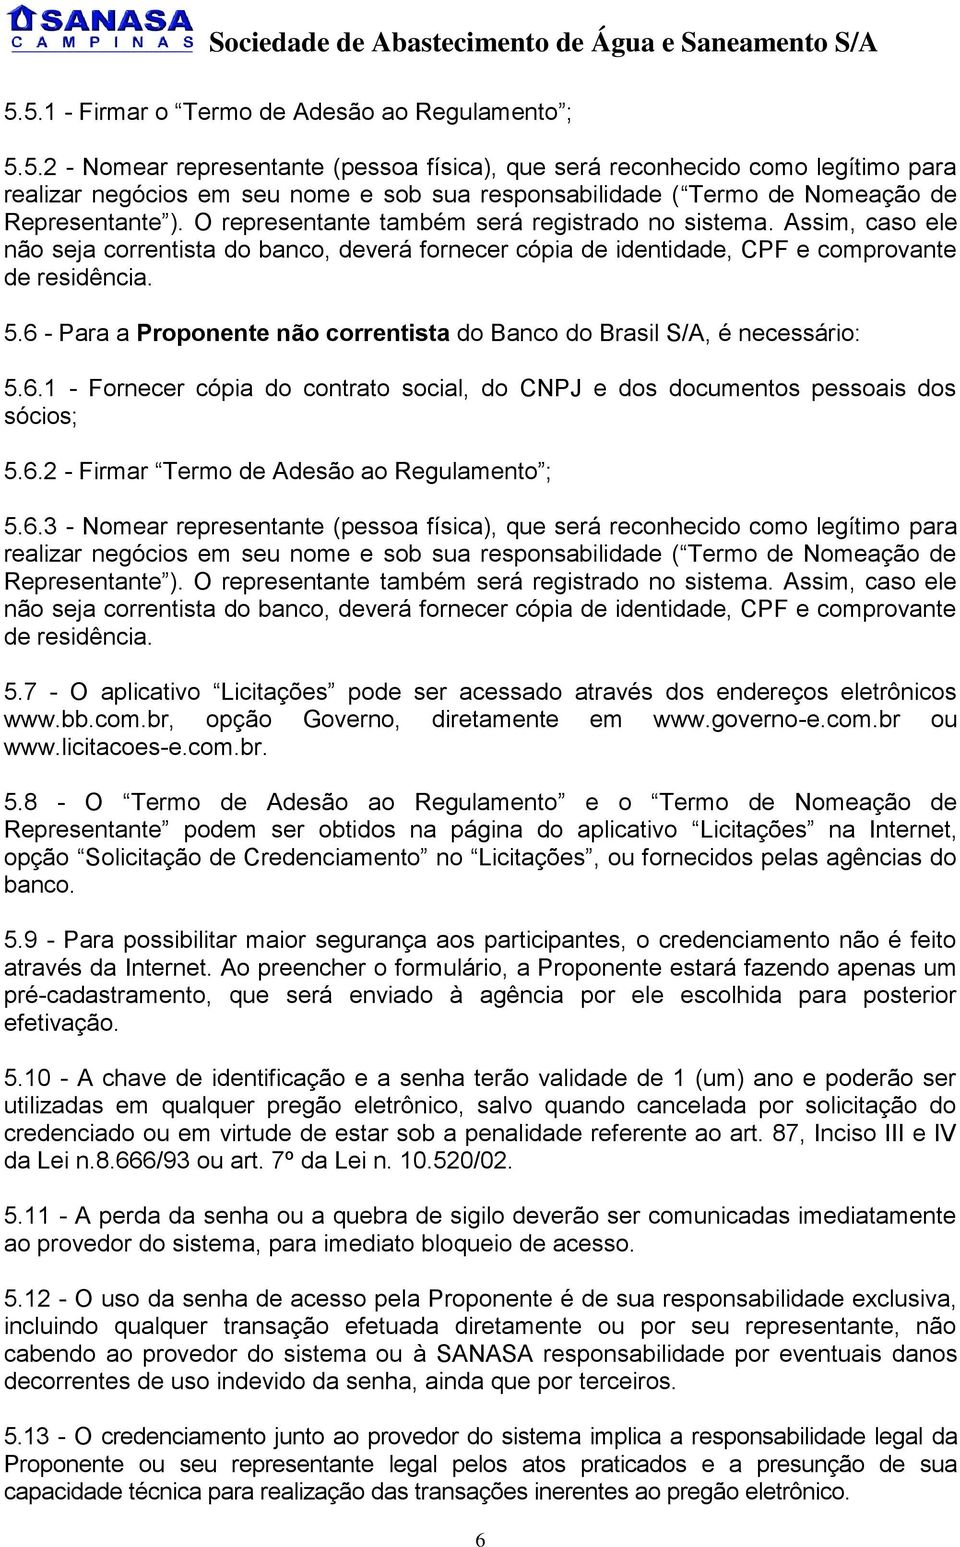 6 - Para a Proponente não correntista do Banco do Brasil S/A, é necessário: 5.6.1 - Fornecer cópia do contrato social, do CNPJ e dos documentos pessoais dos sócios; 5.6.2 - Firmar Termo de Adesão ao Regulamento ; 5.